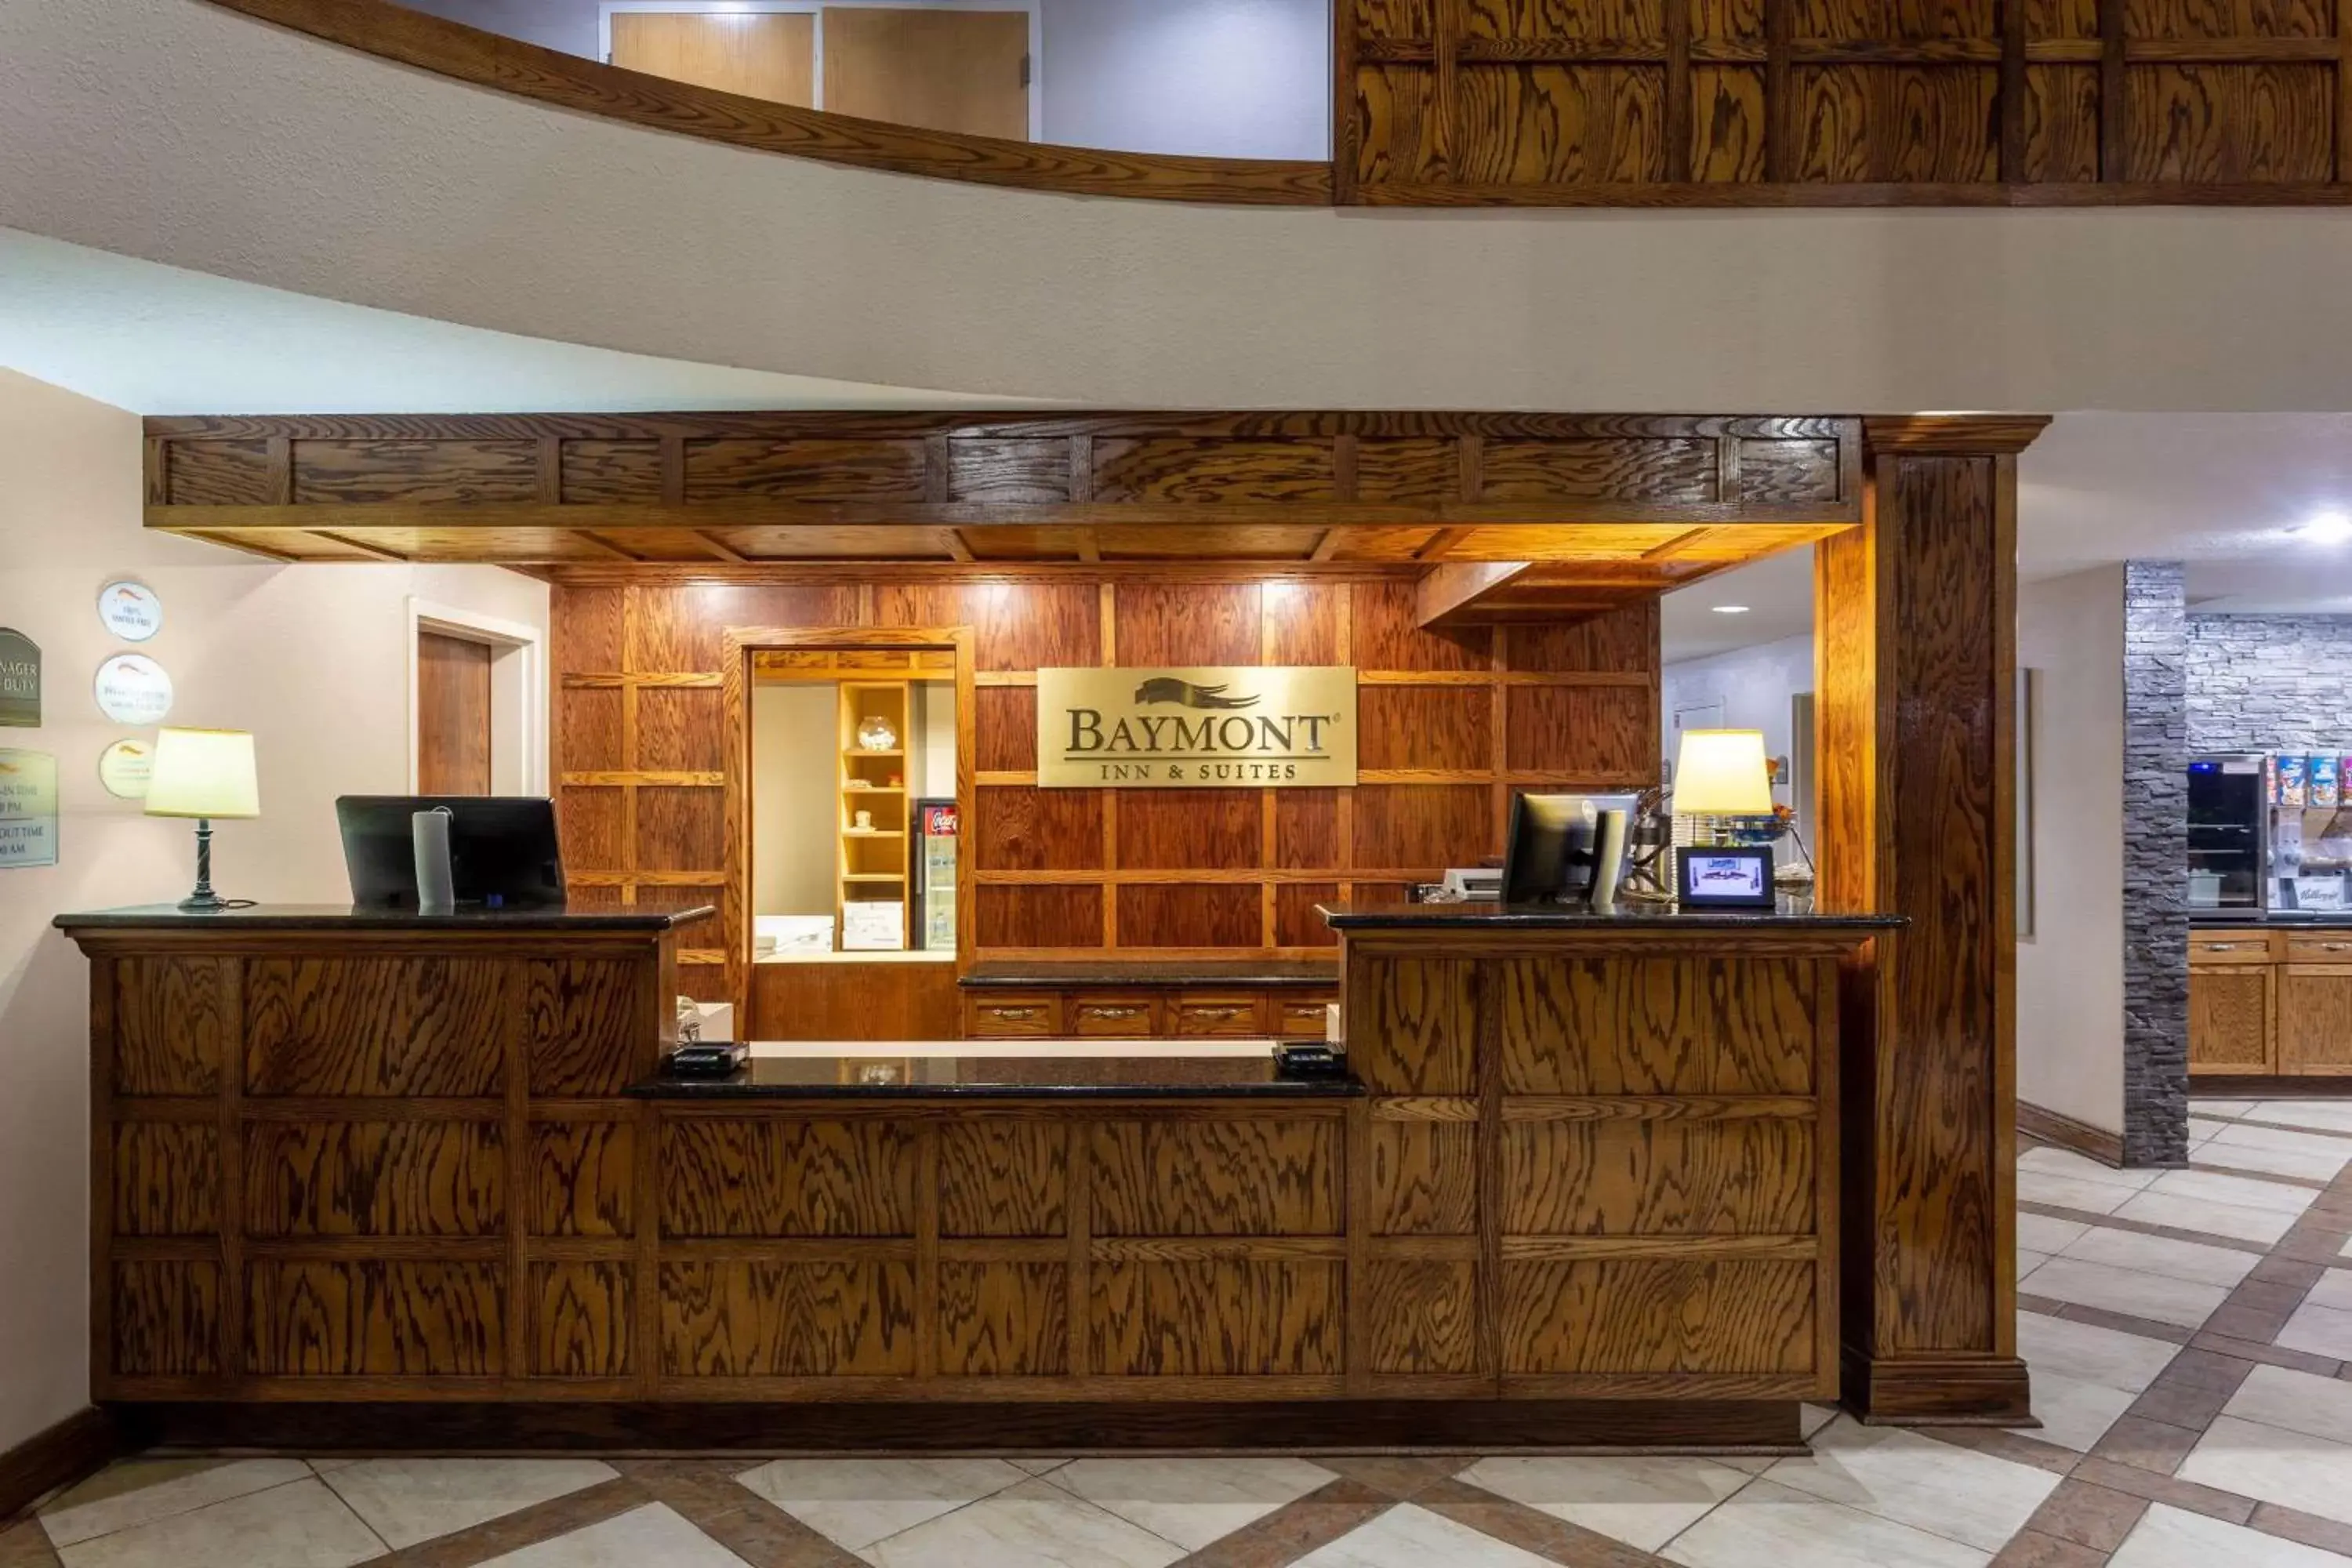 Lobby or reception, Lobby/Reception in Baymont by Wyndham Elkhart